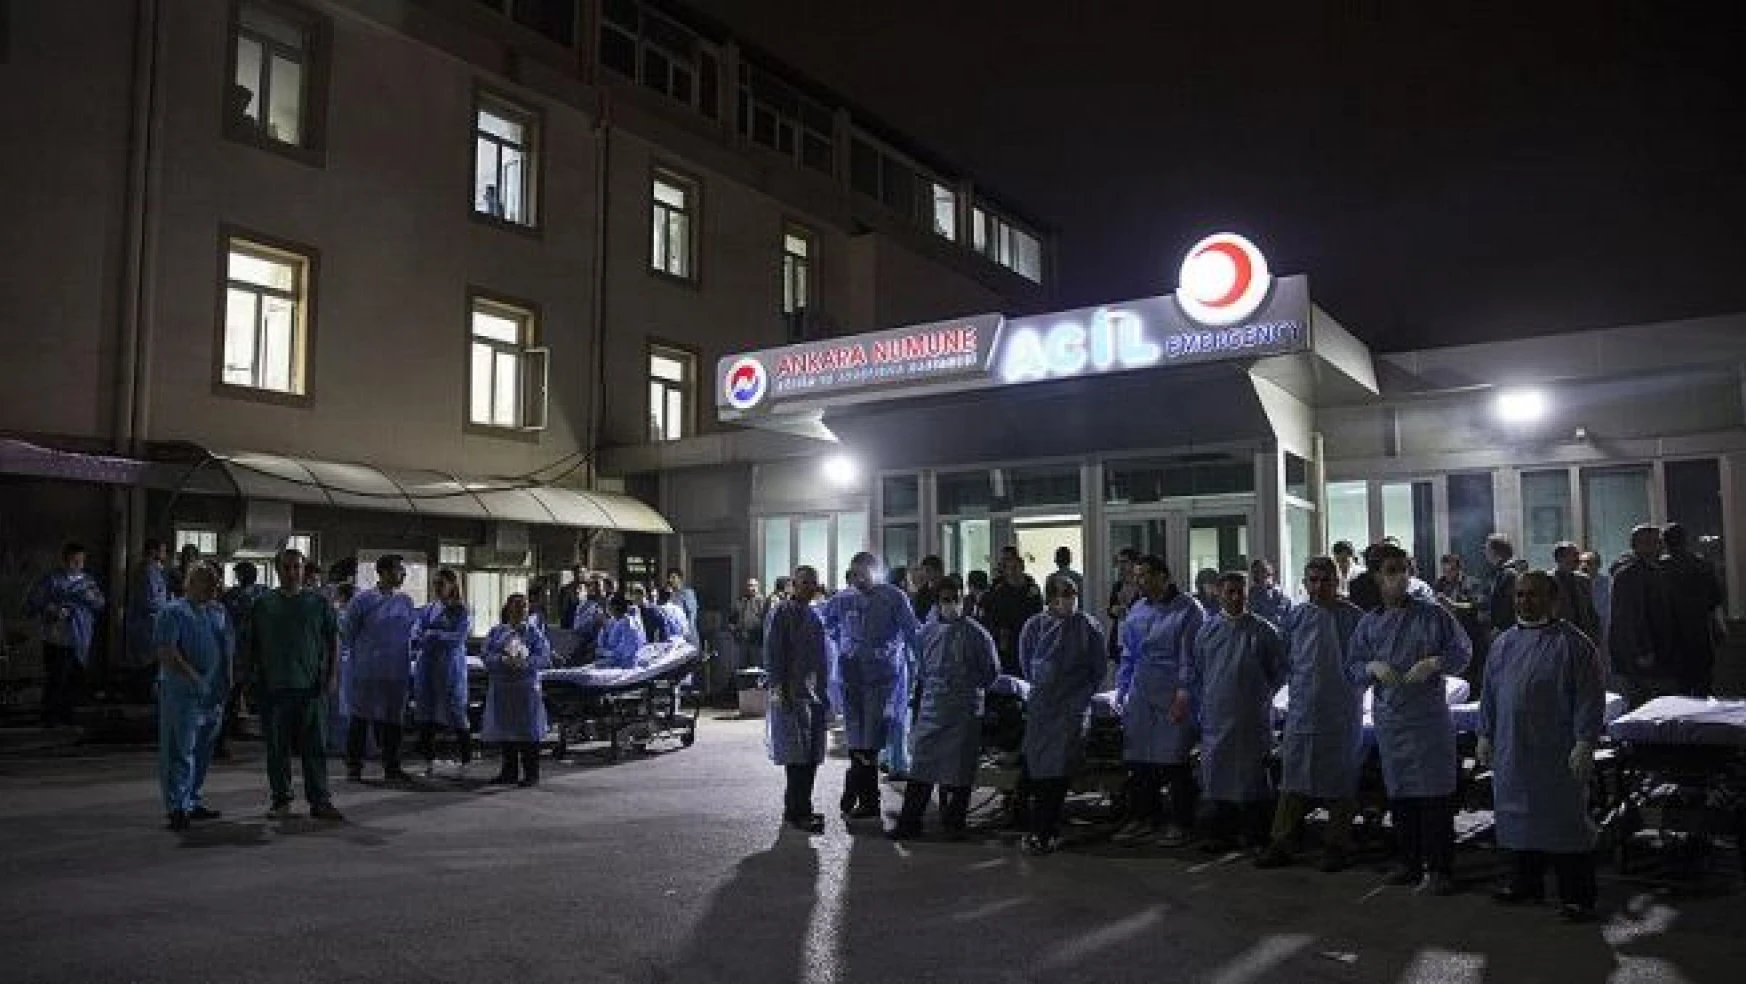 Ankara'daki saldırıda yaralanan bir kişi daha hayatını kaybetti, sayı 29'a çıktı